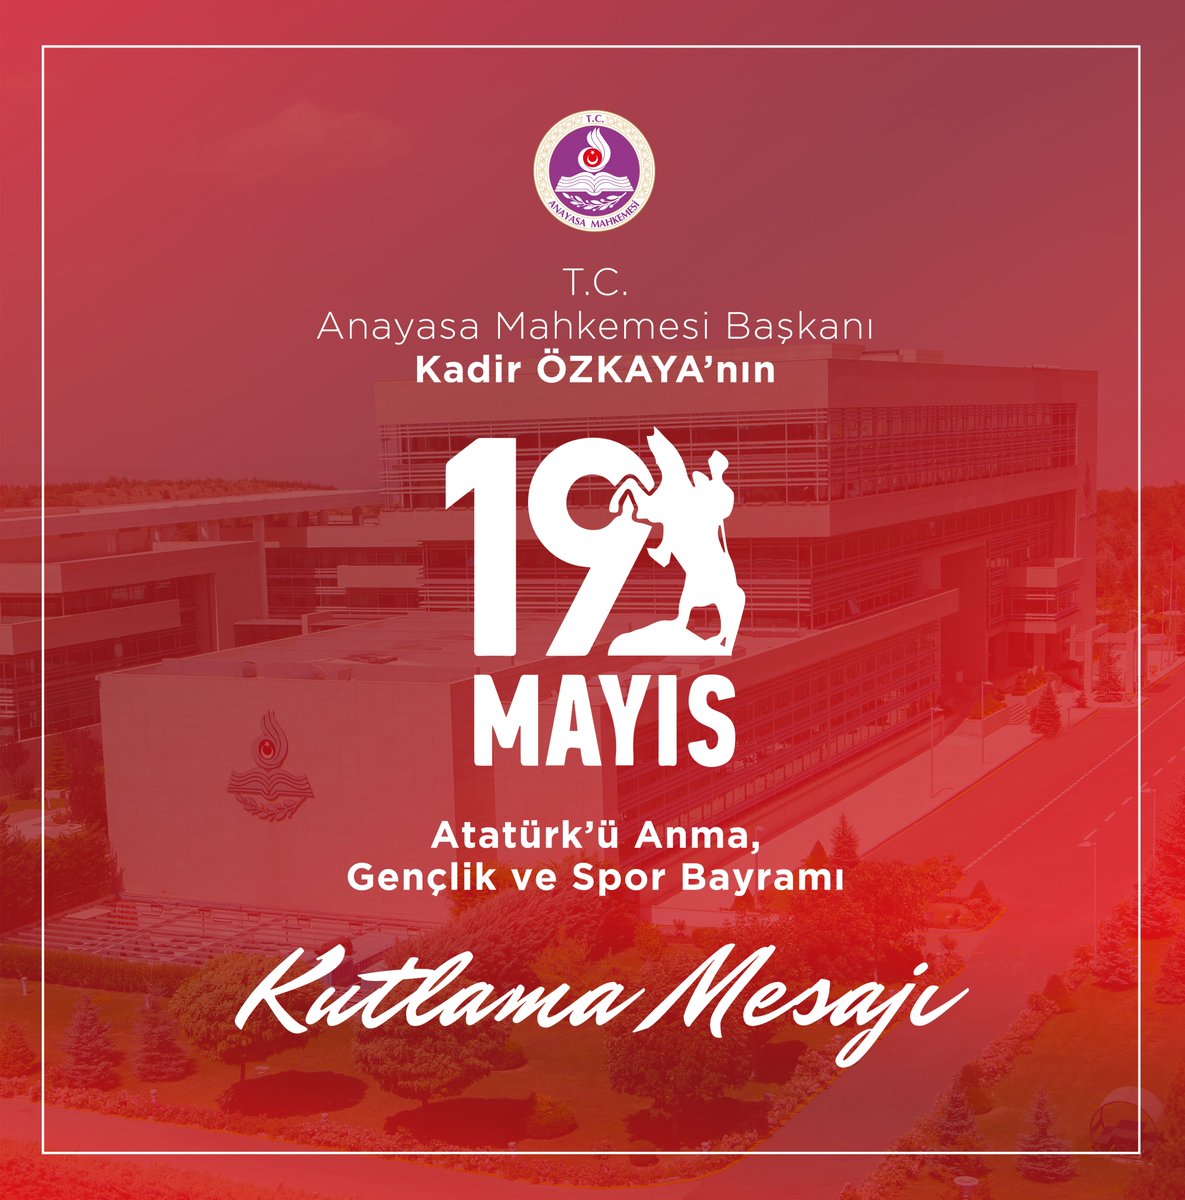 Anayasa Mahkemesi Başkanı Kadir Özkaya'nın 19 Mayıs Atatürk'ü Anma, Gençlik ve Spor Bayramı Kutlama Mesajı anayasa.gov.tr/tr/haberler/fa…